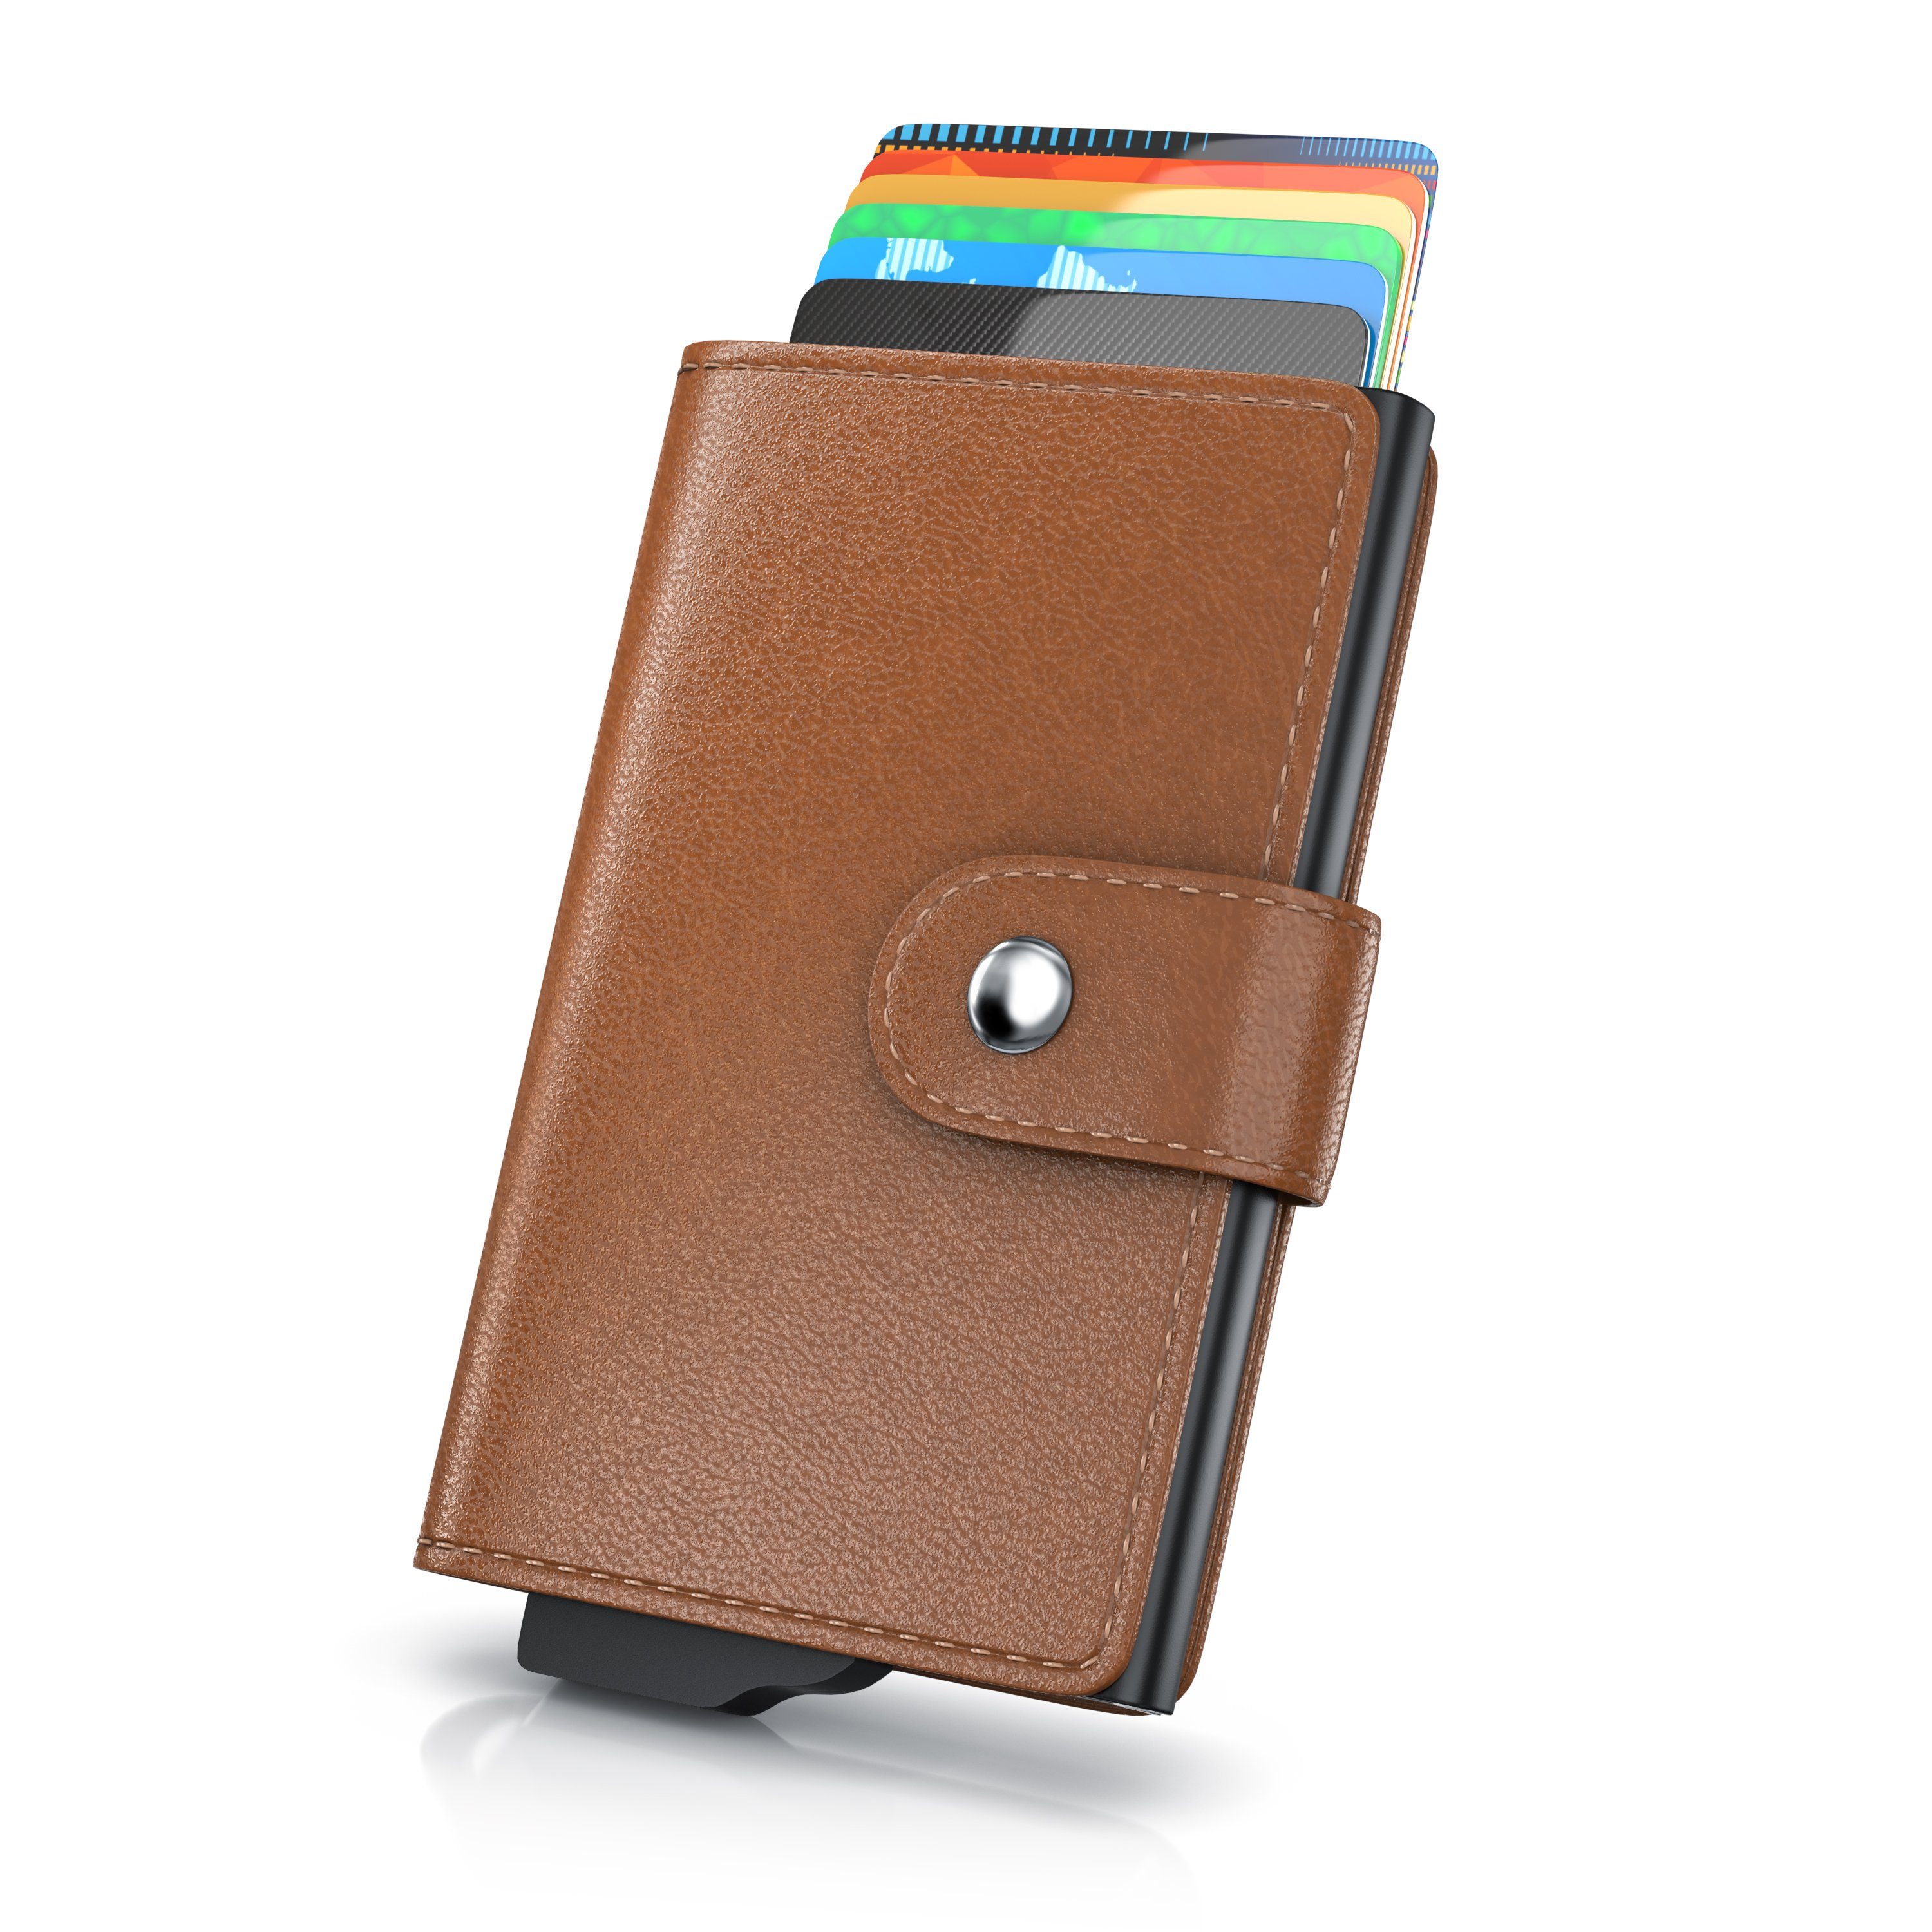 Aplic Kartenetui, NFC / RFID Blocker Karten Portemonnaie, Abschirmung für max. 6 Karten braun